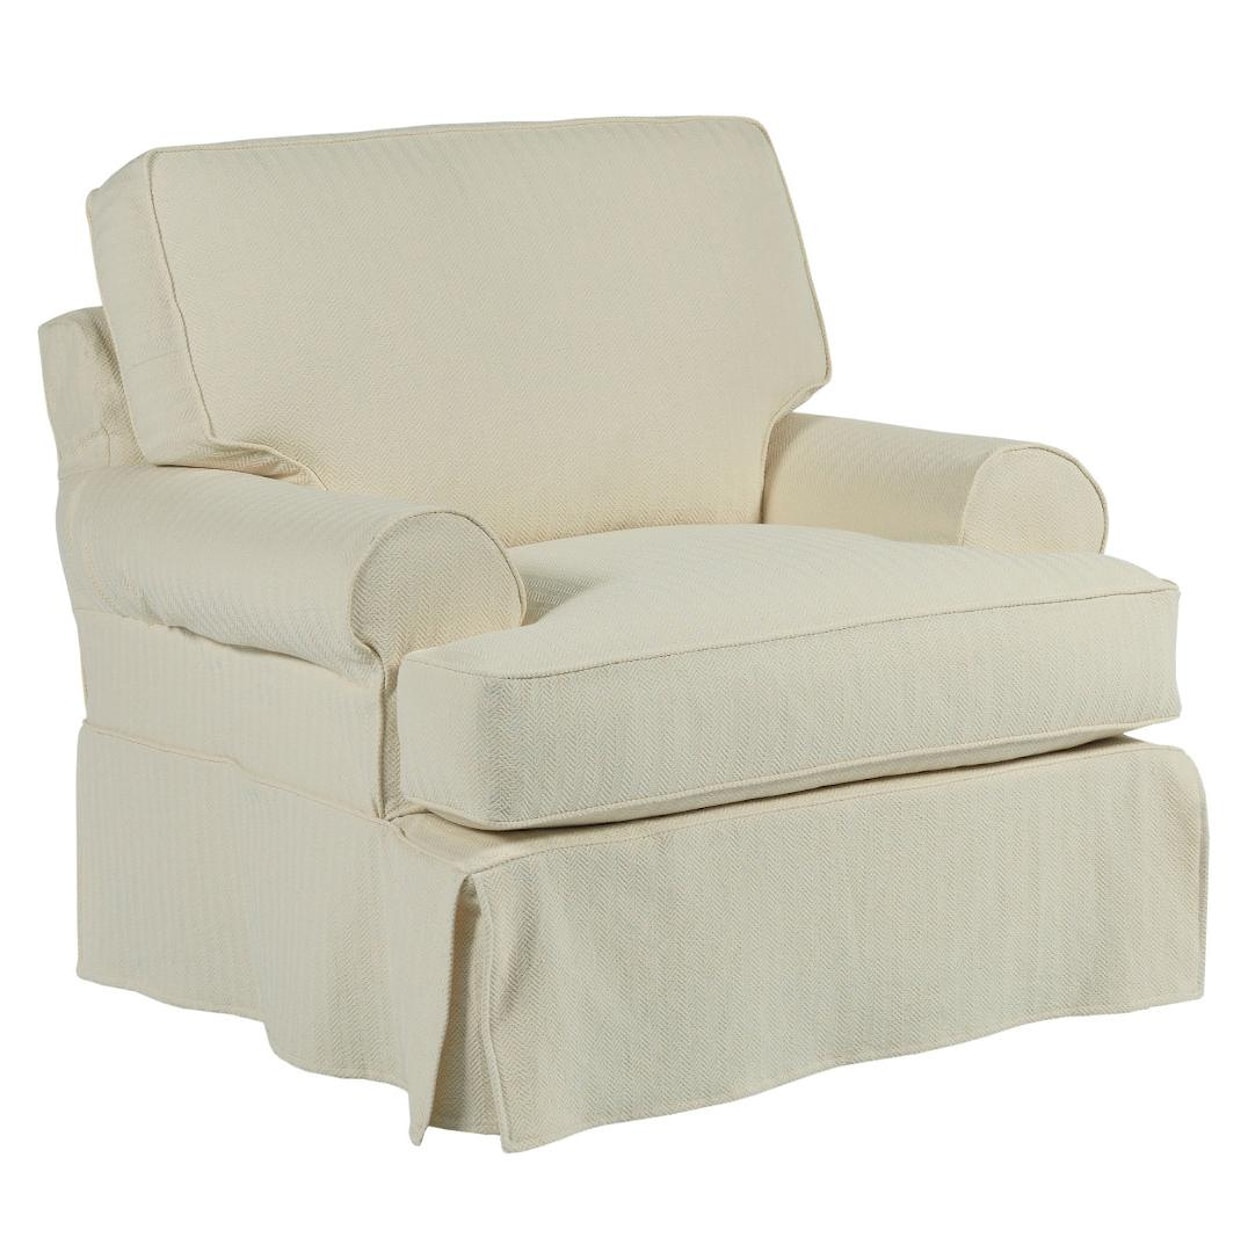 Kincaid Furniture Samantha Slipcover Chair